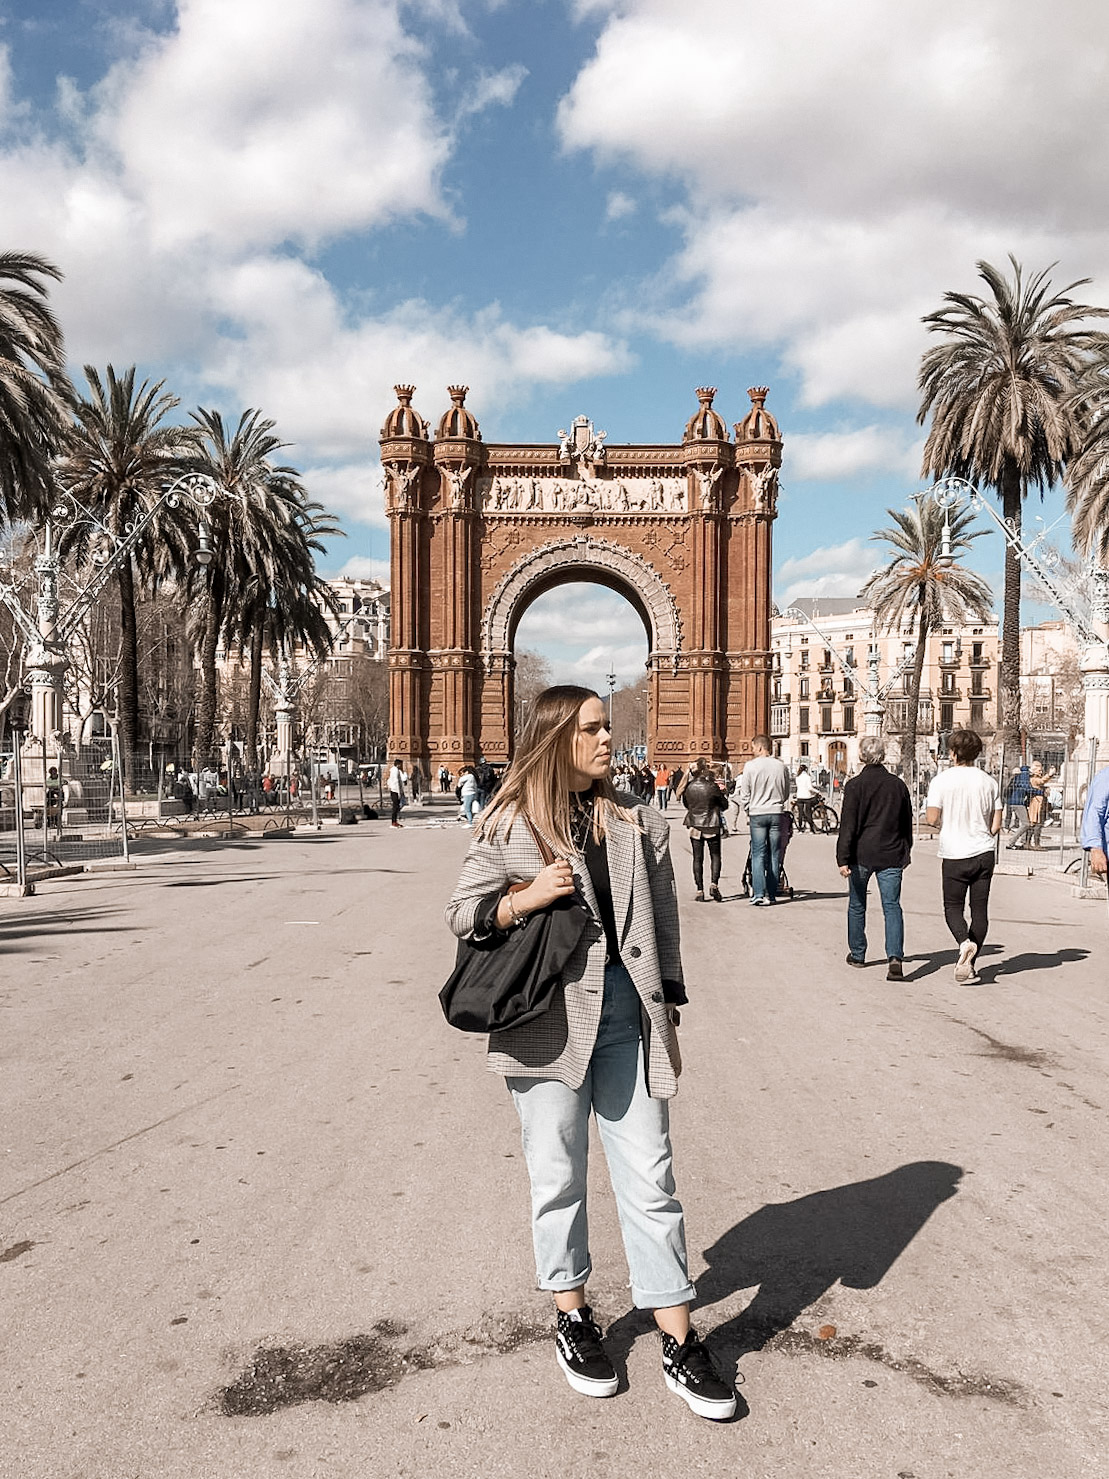 Arco del triunfo, Barcelona